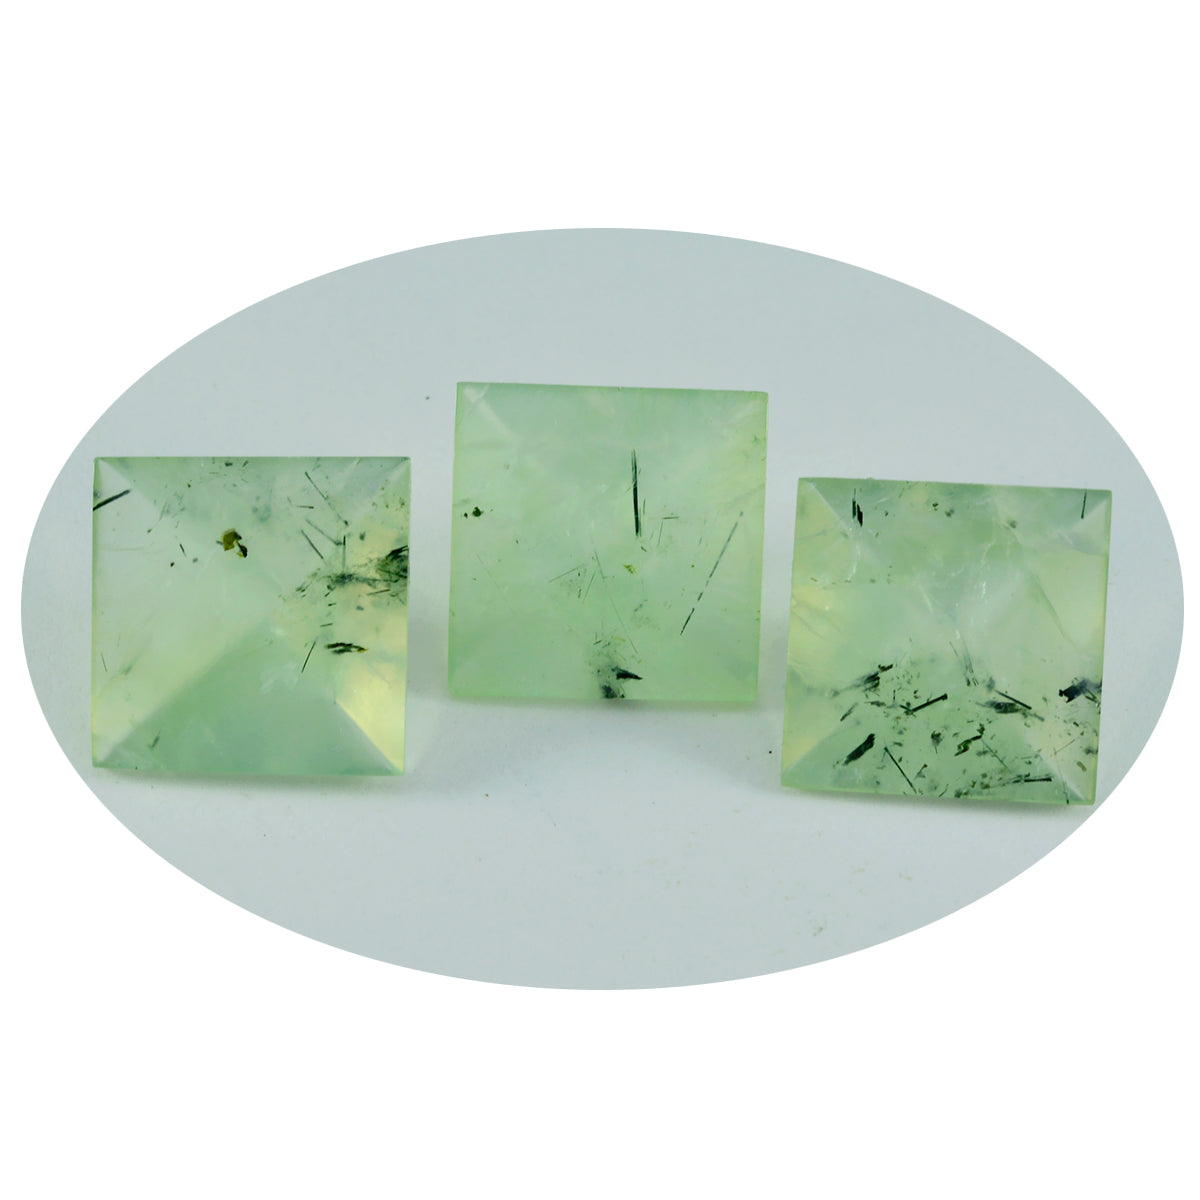 Riyogems 1 Stück grüner Prehnit, facettiert, 12 x 12 mm, quadratische Form, schöner Qualitäts-Edelstein